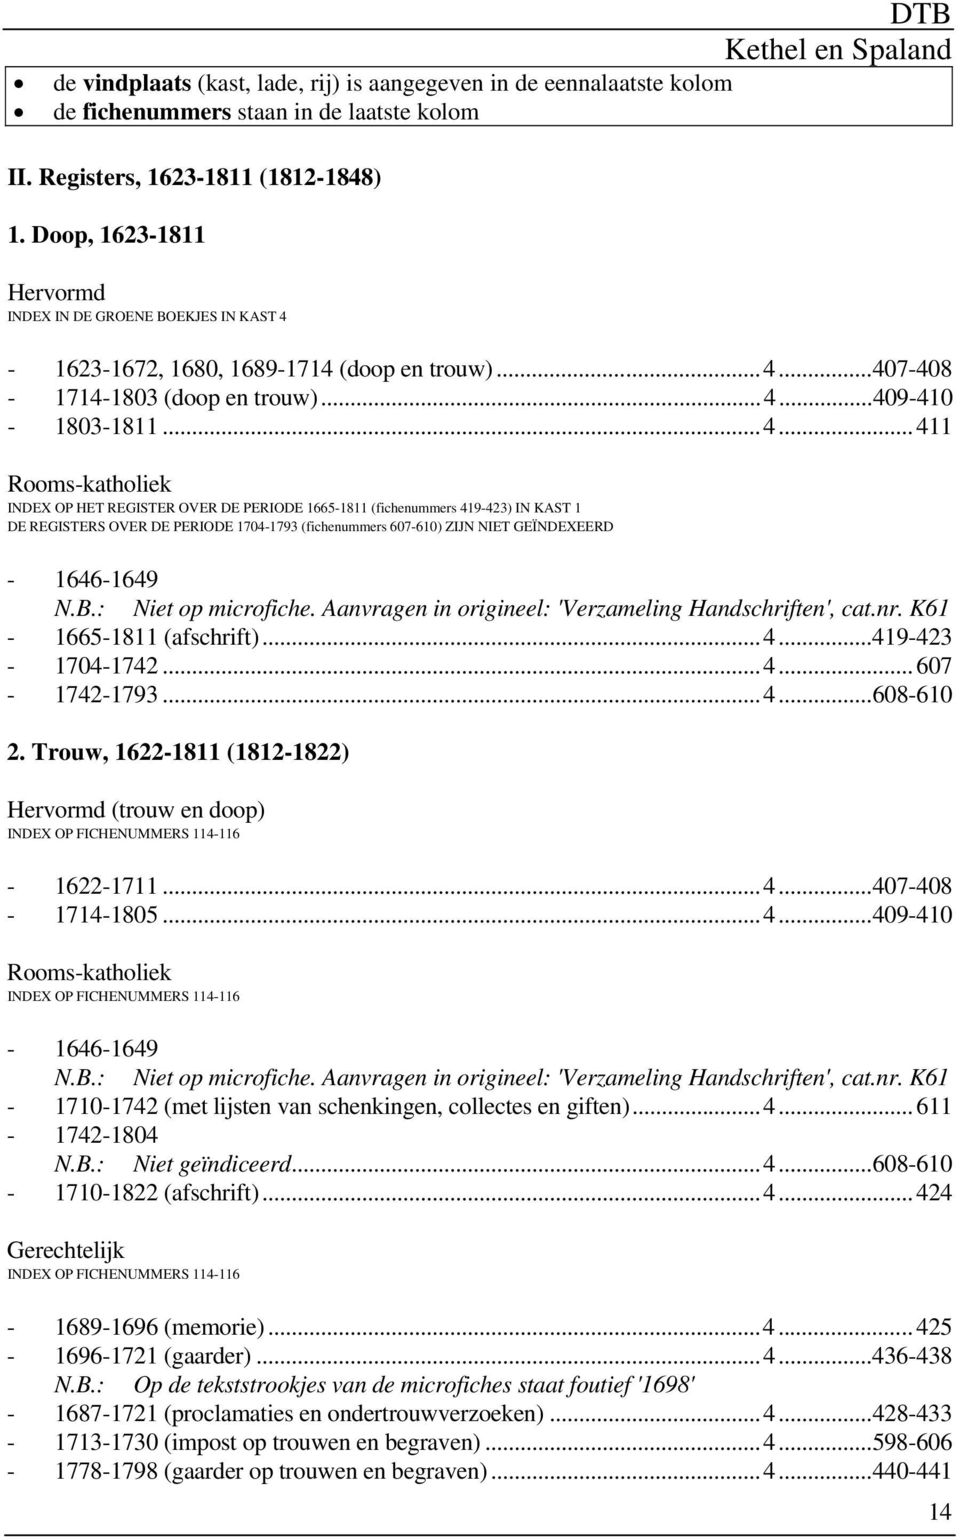 PERIODE 1704-1793 (fichenummers 607-610) ZIJN NIET GEÏNDEXEERD - 1646-1649 N.B.: Niet op microfiche. Aanvragen in origineel: 'Verzameling Handschriften', cat.nr. K61-1665-1811 (afschrift)...4...419-423 - 1704-1742.